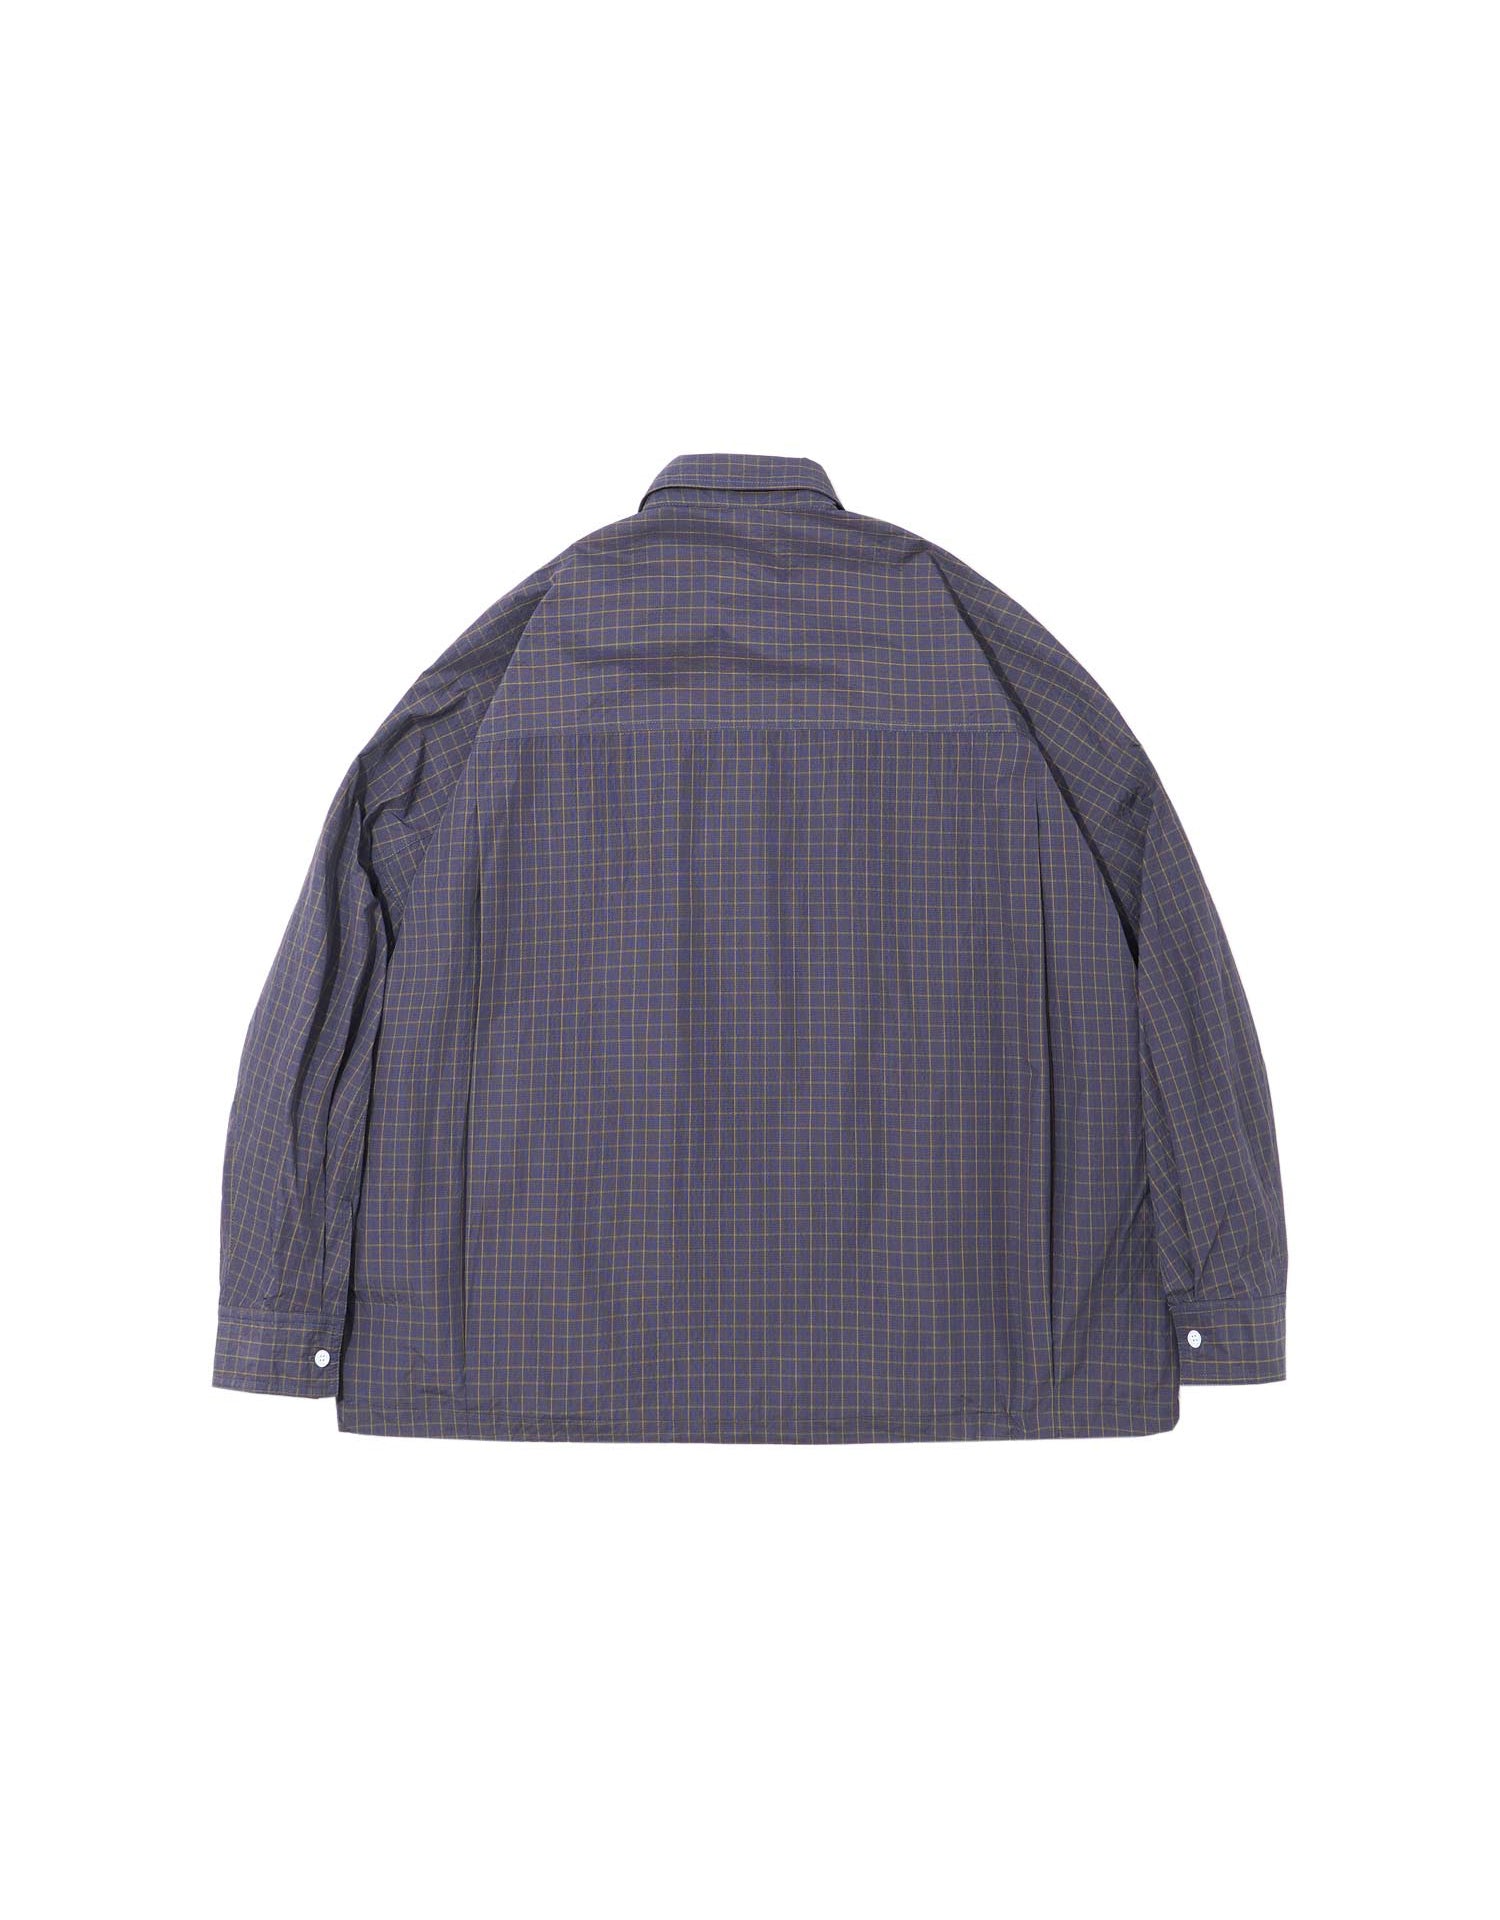 TopBasics Checkered Three Pockets Shirt